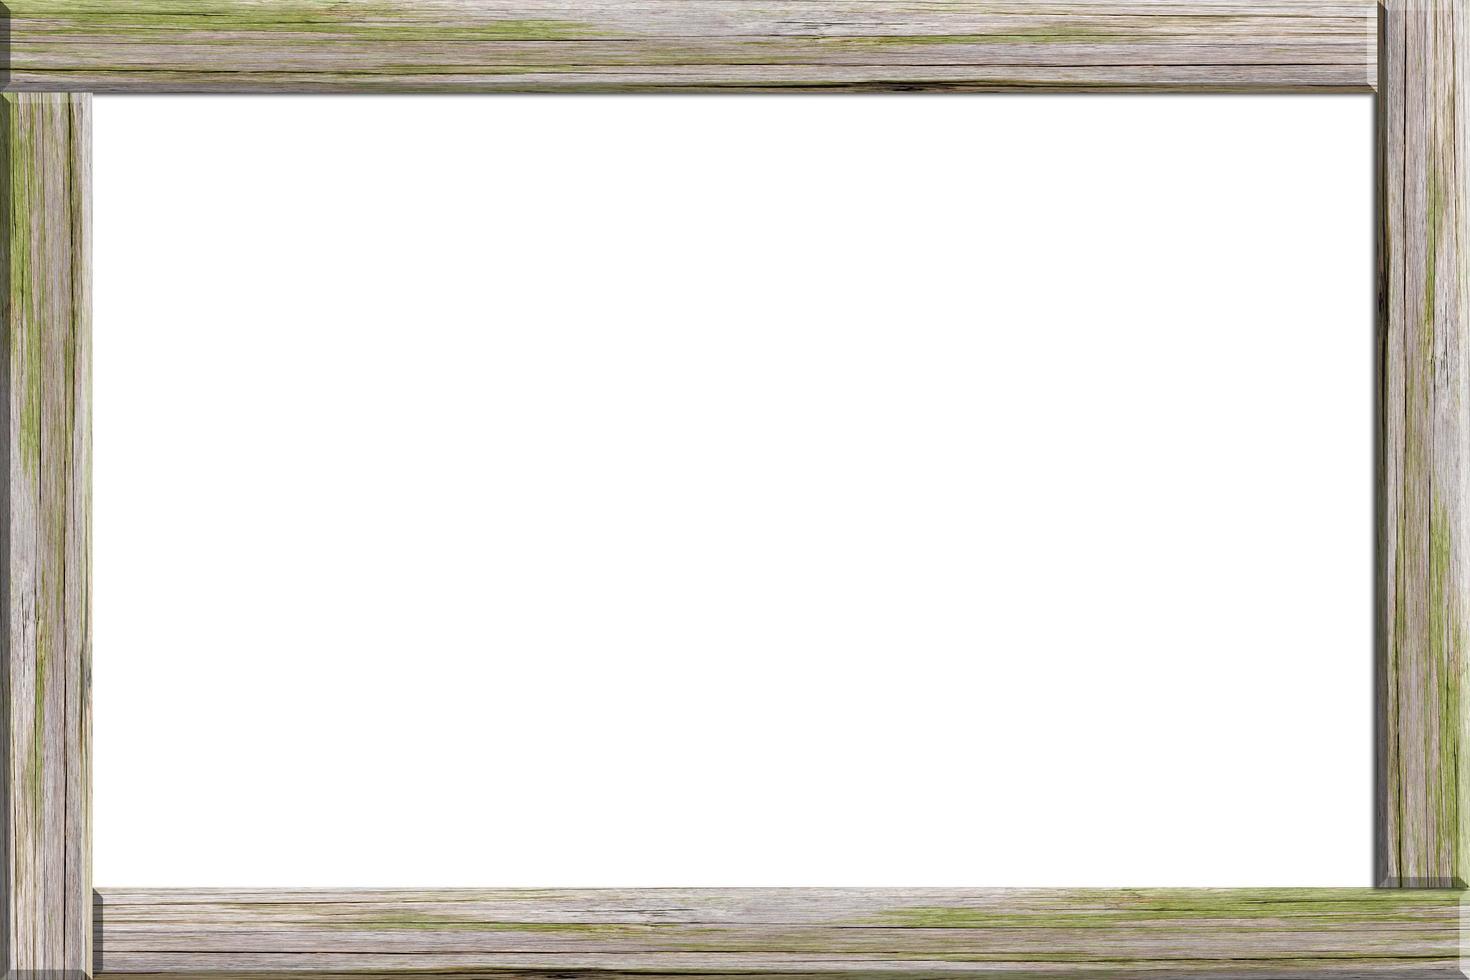 Wood frame on white background photo